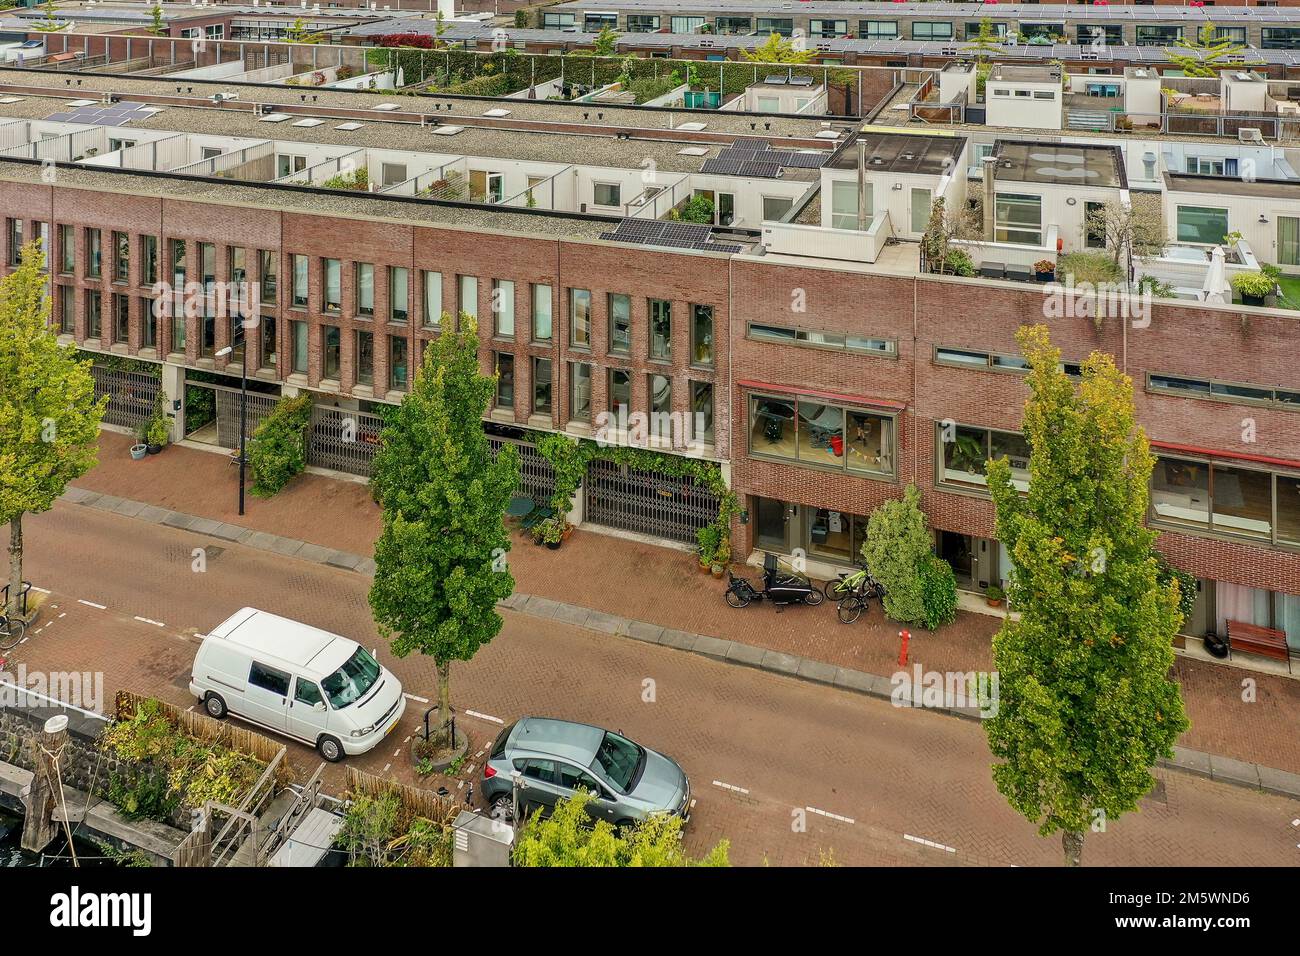 vue aérienne d'une ville avec de nombreux bâtiments et voitures garés dans la rue en face des autres bâtiments Banque D'Images